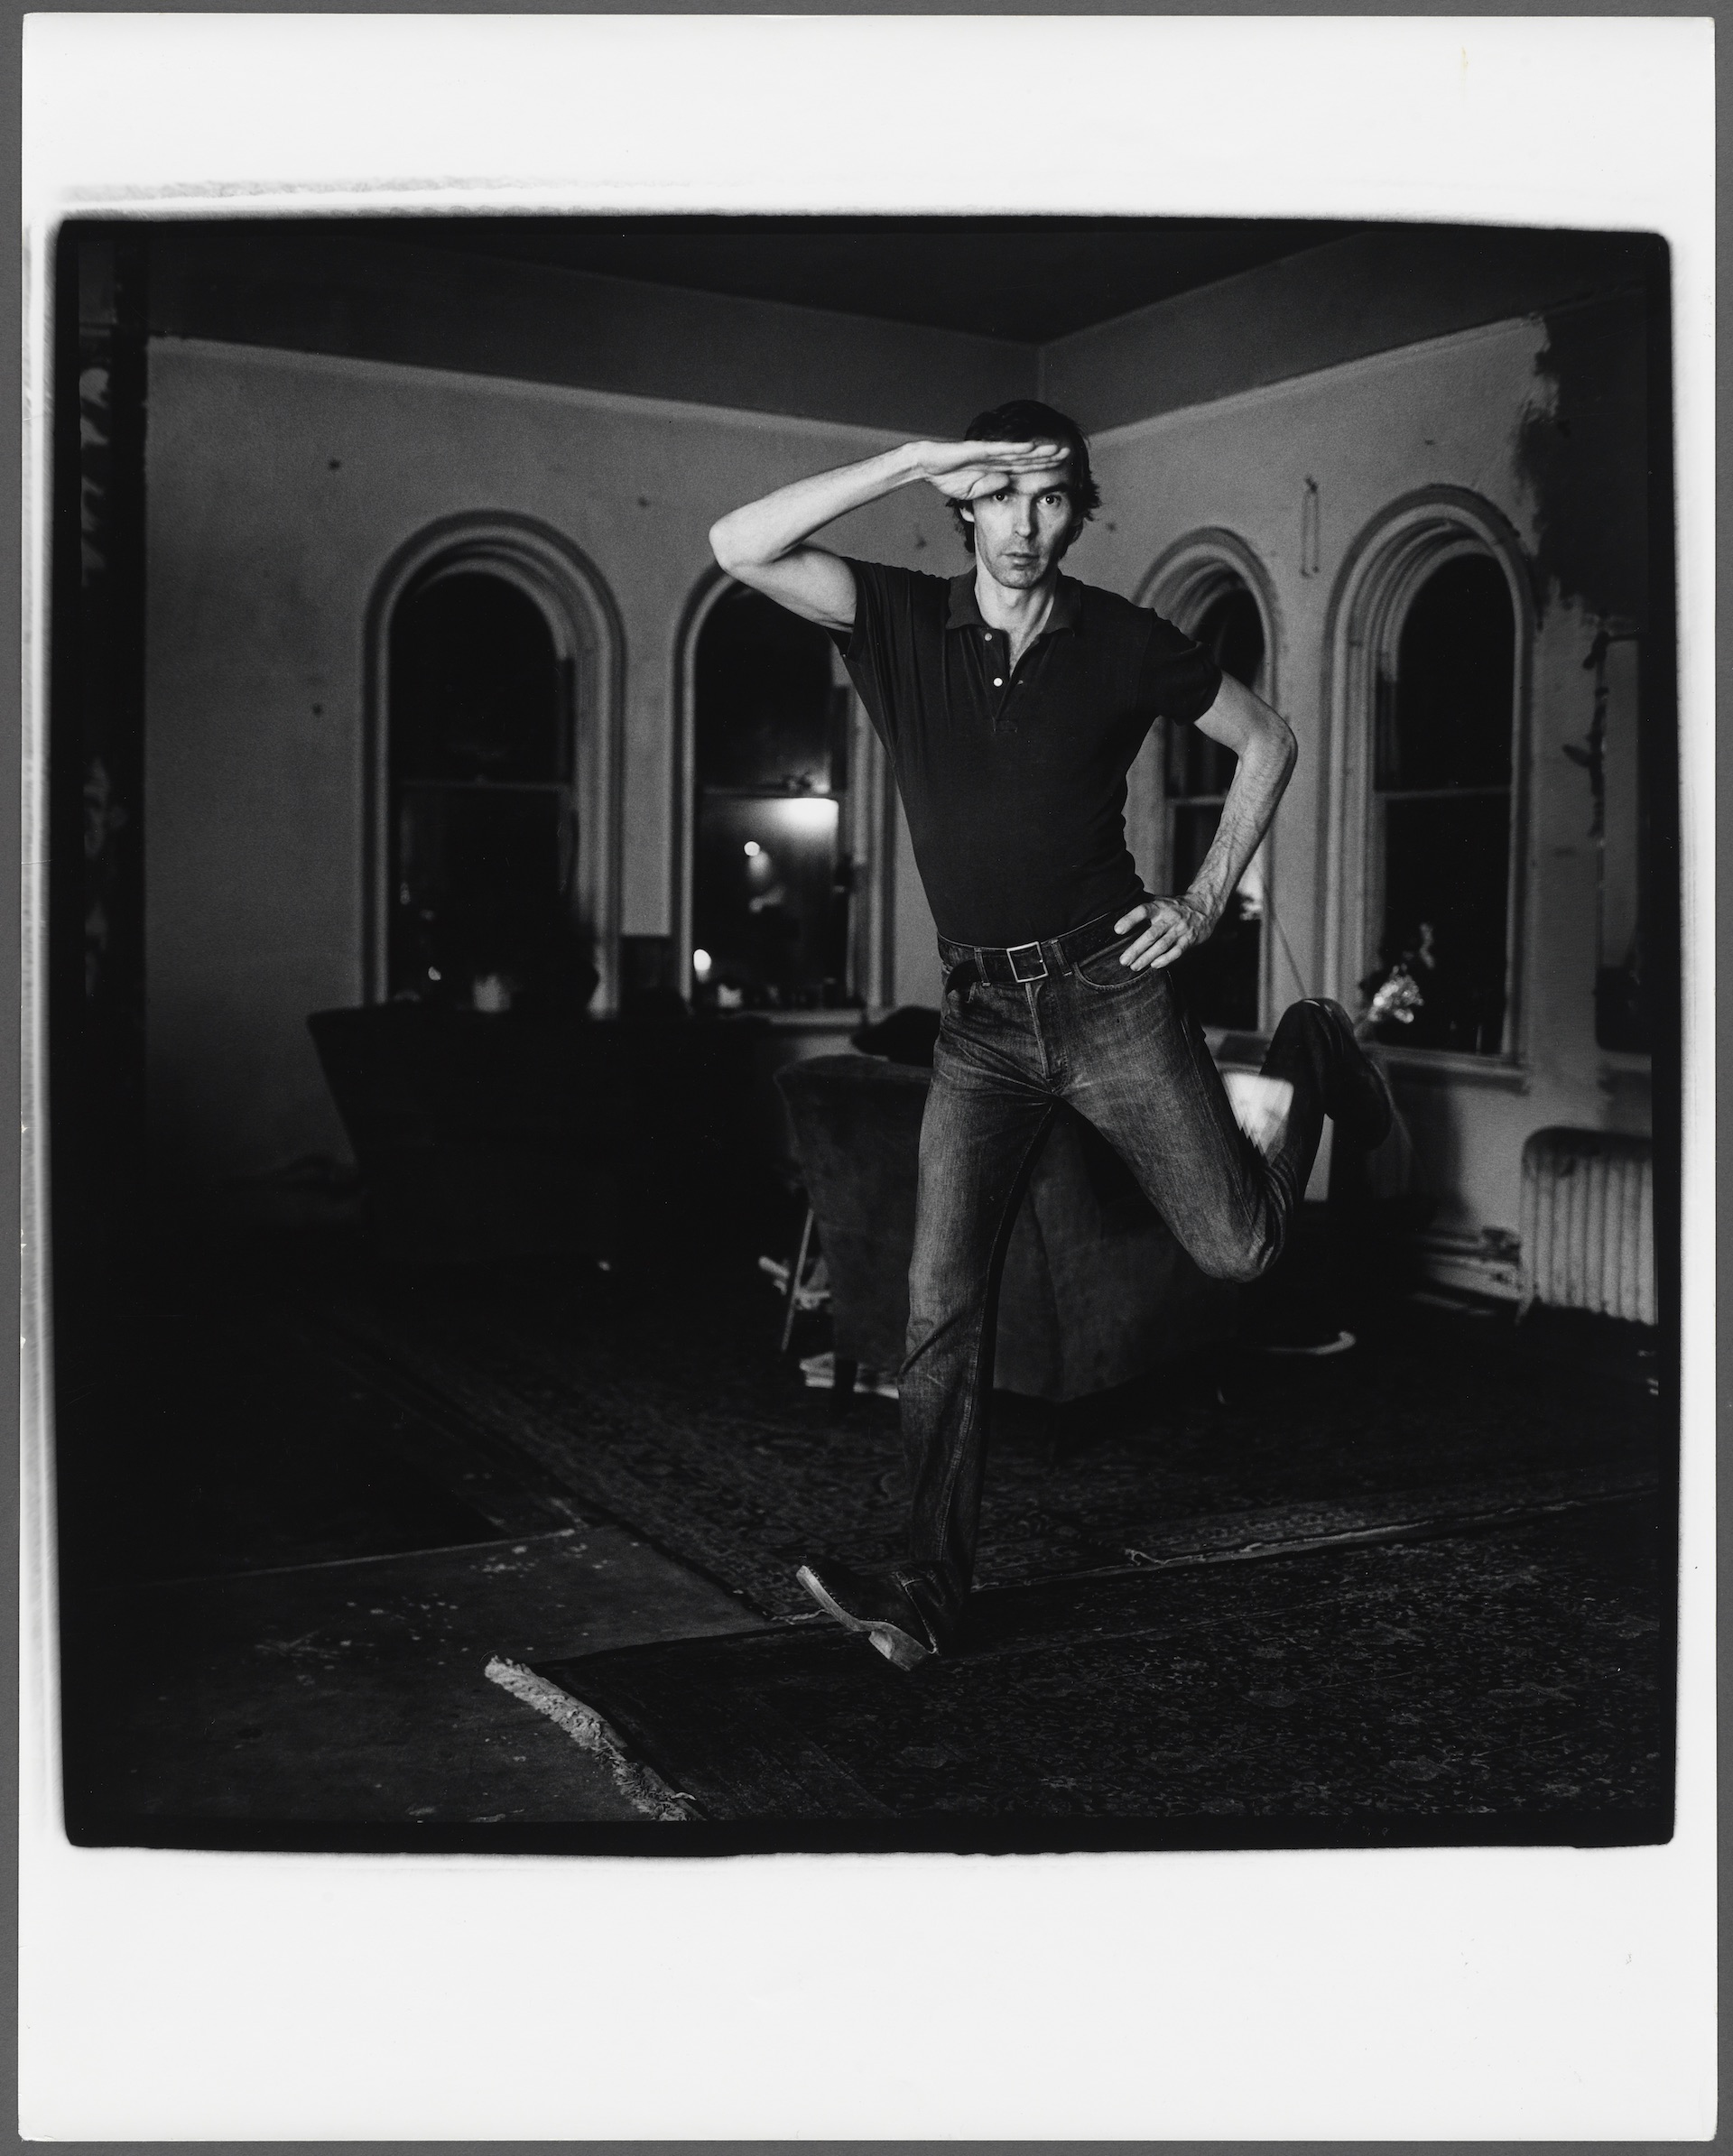 "Self Portrait Jumping," a 1974 photograph by artist Peter Hujar